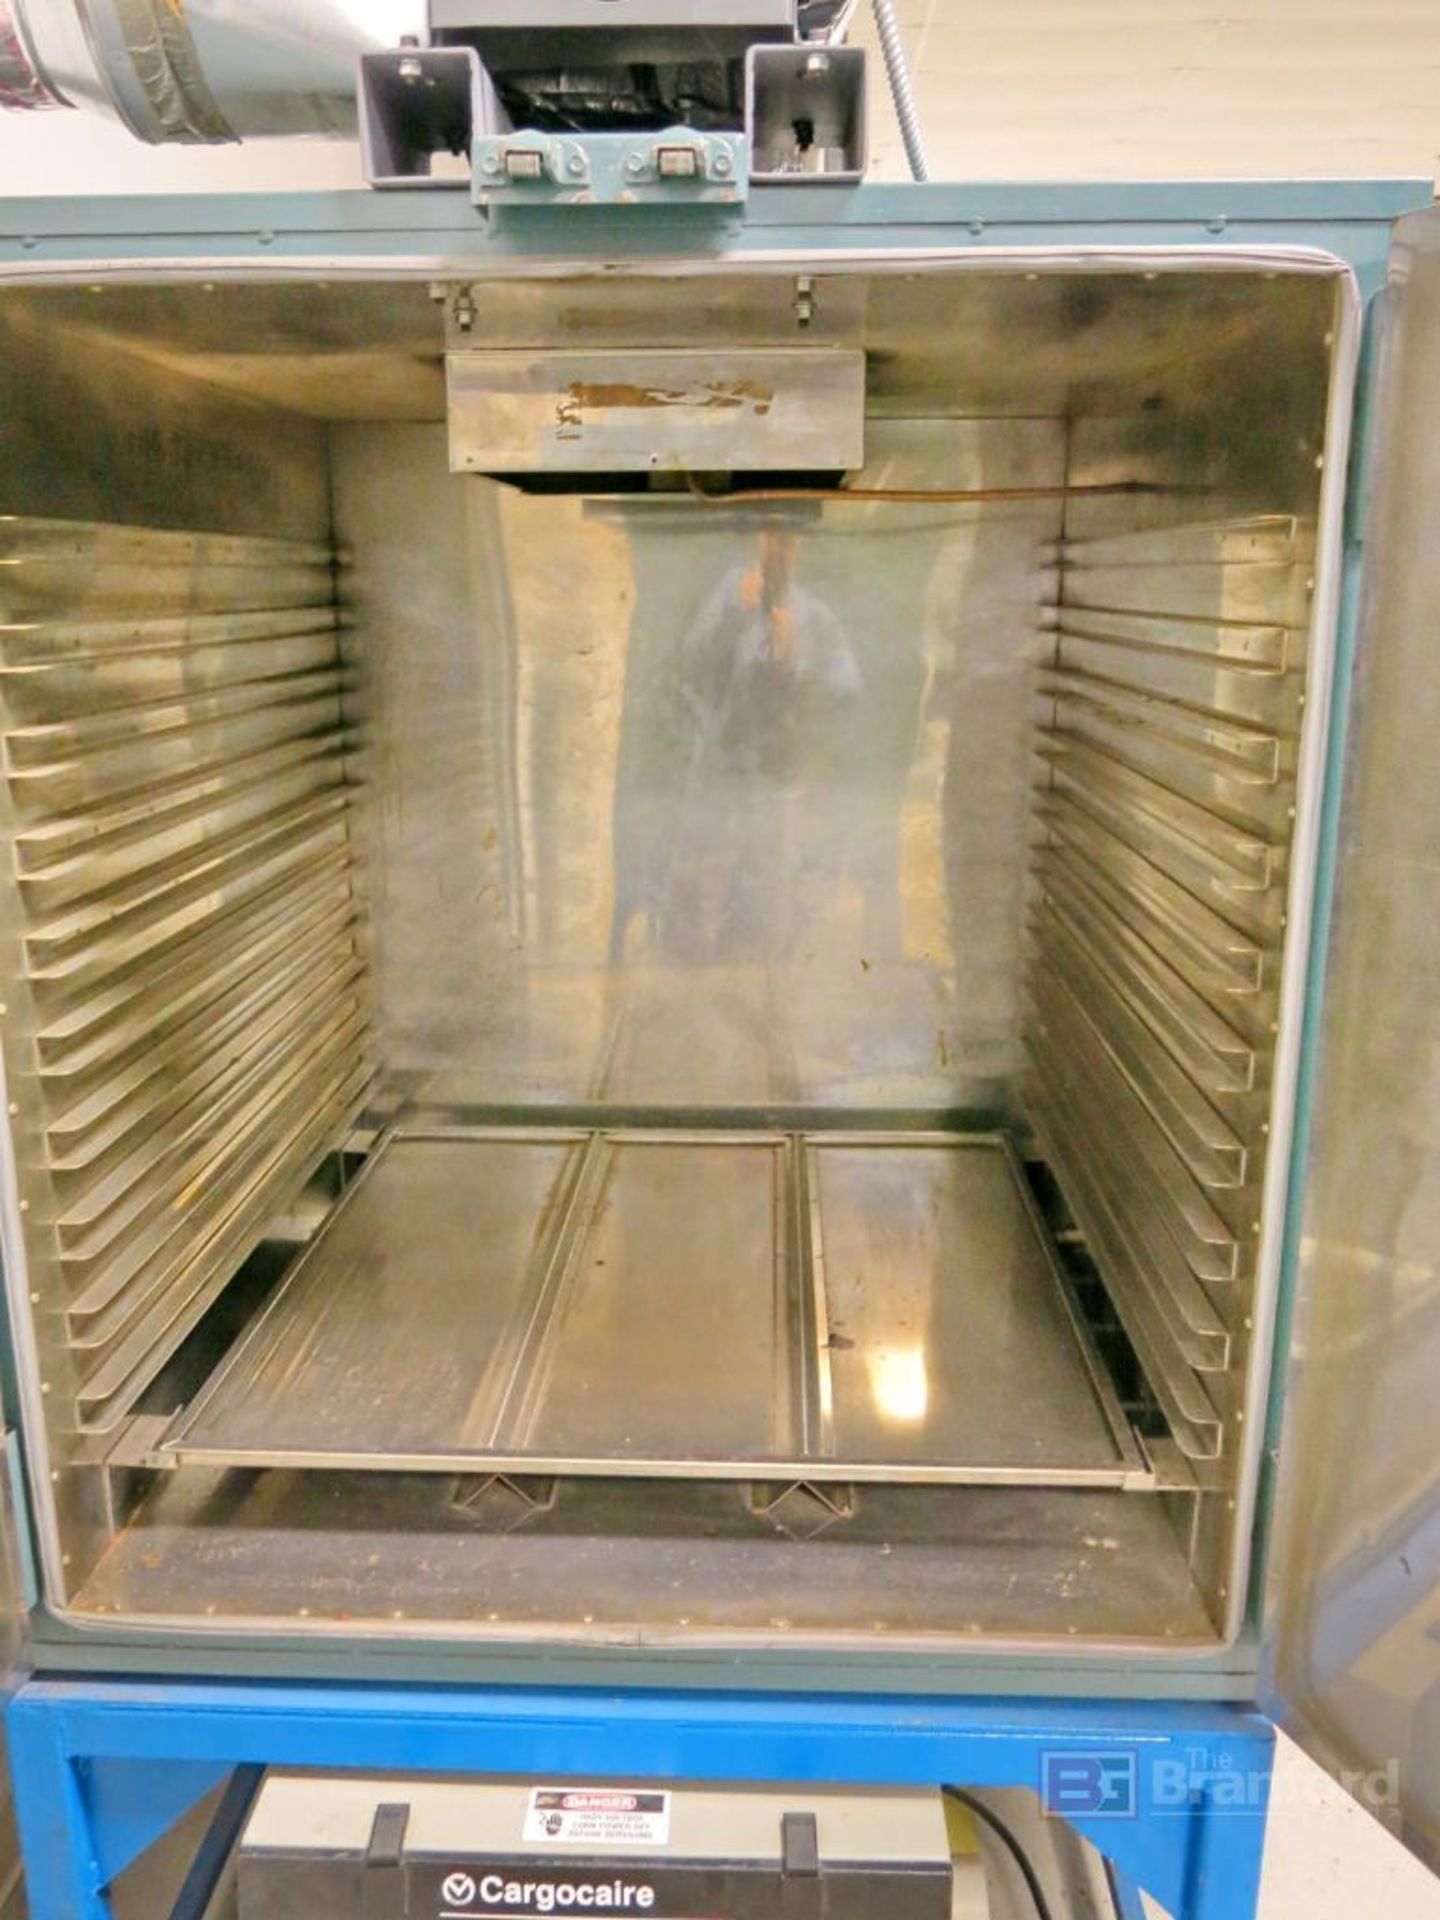 Grieve 2-Door Oven Model 333 - Image 2 of 3